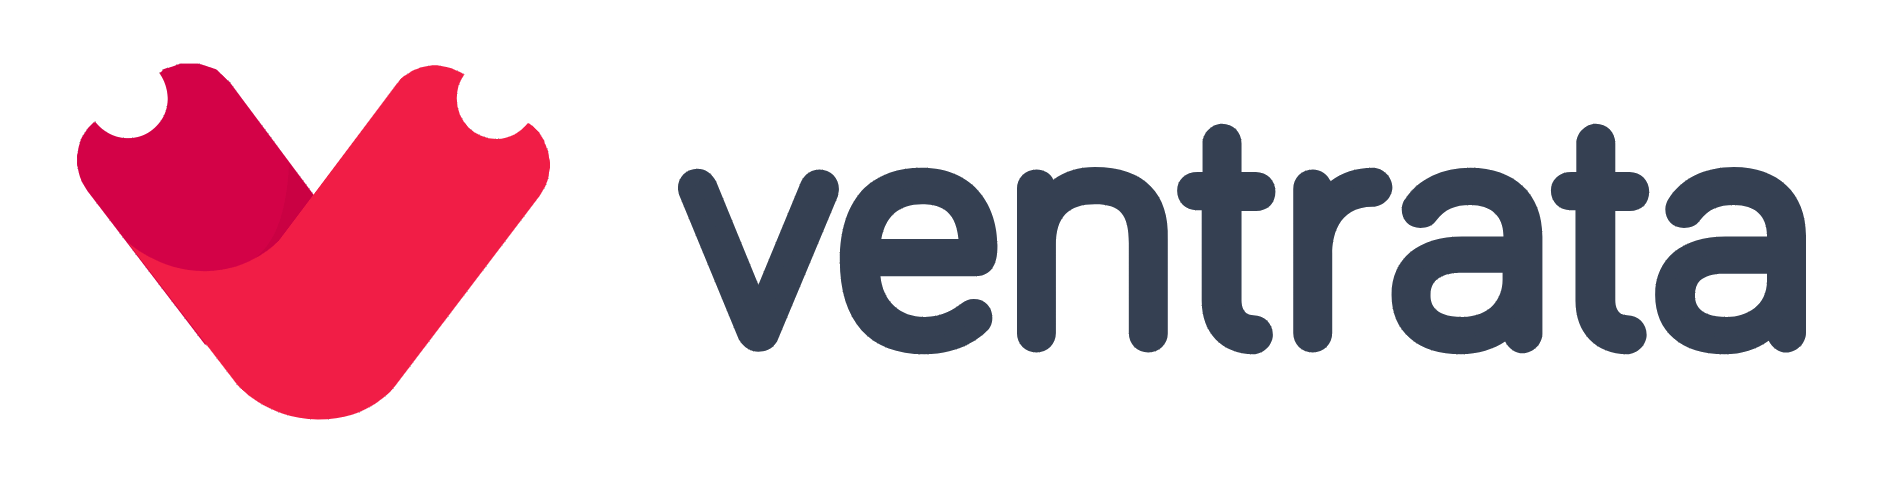 Ventrata Logo Final